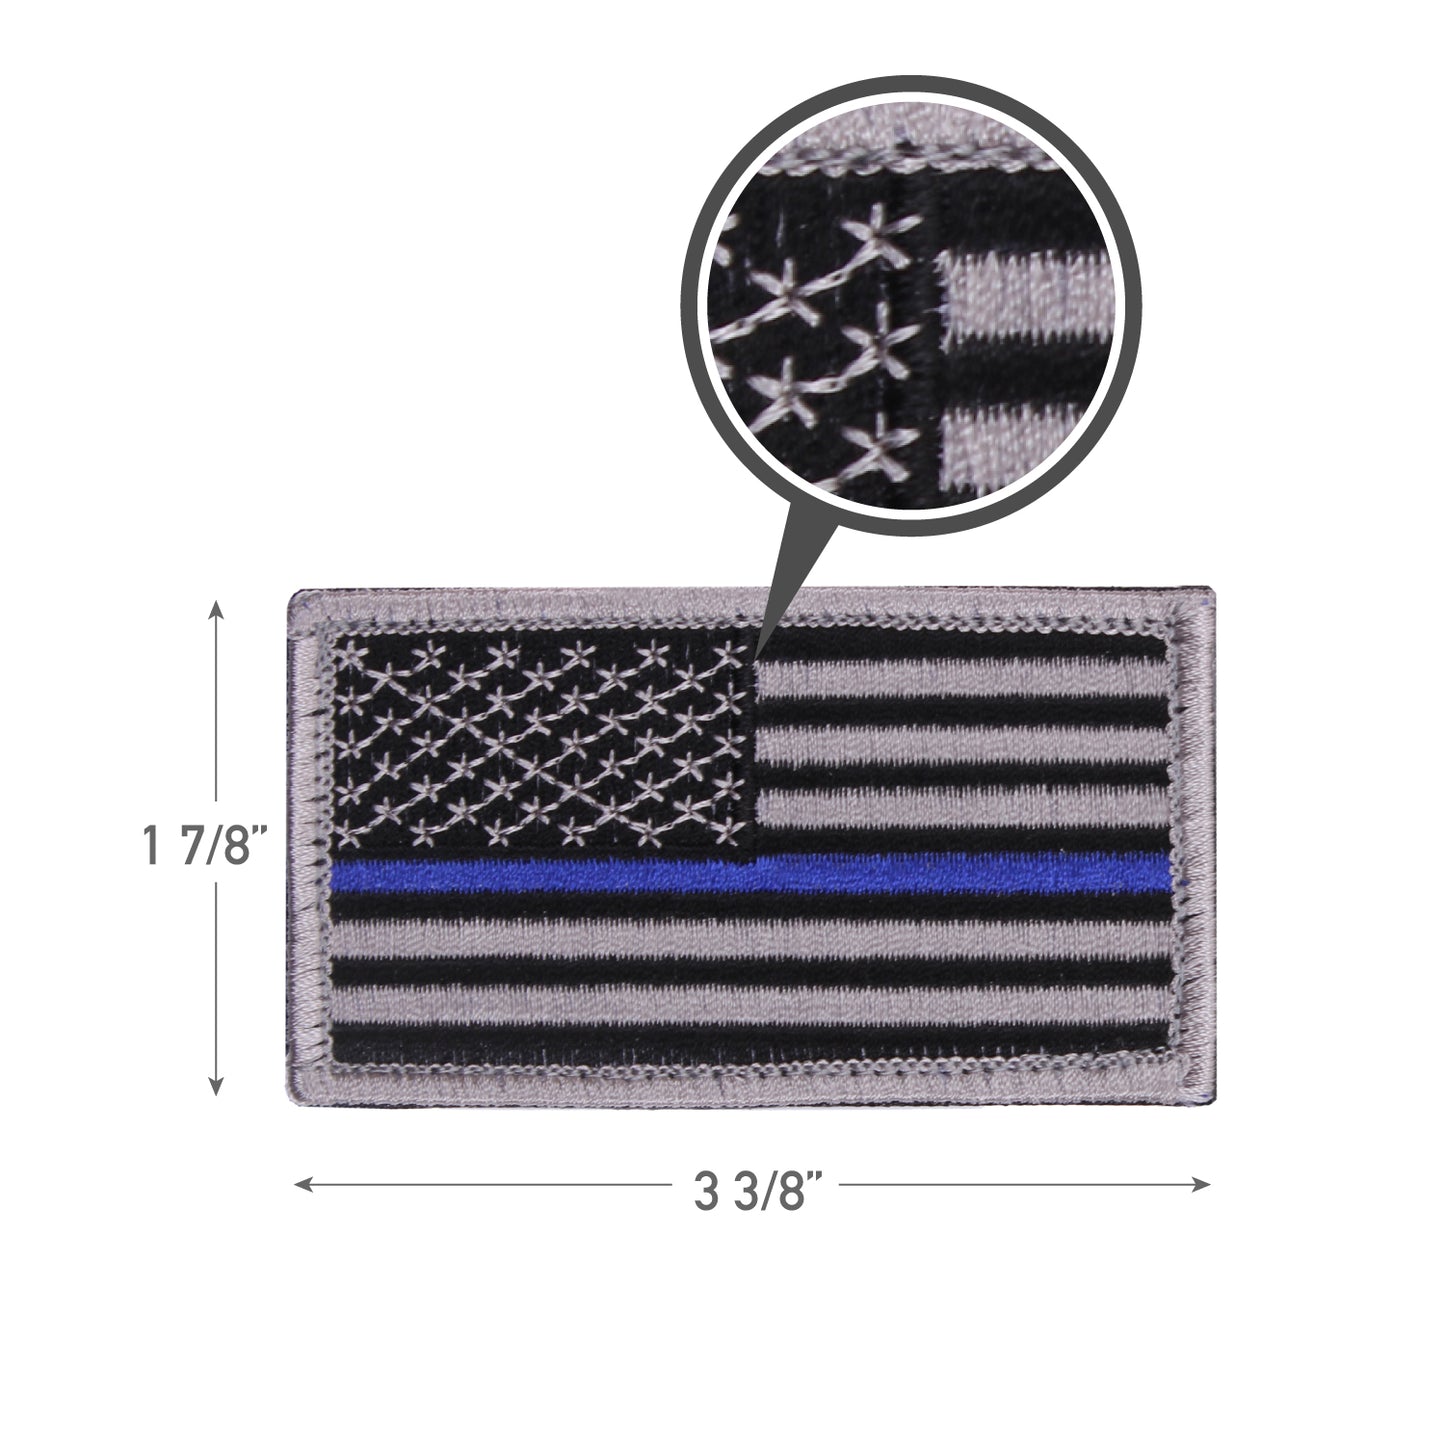 Rothco Thin Blue Line Police U.S. Flag Patch - Hook Back